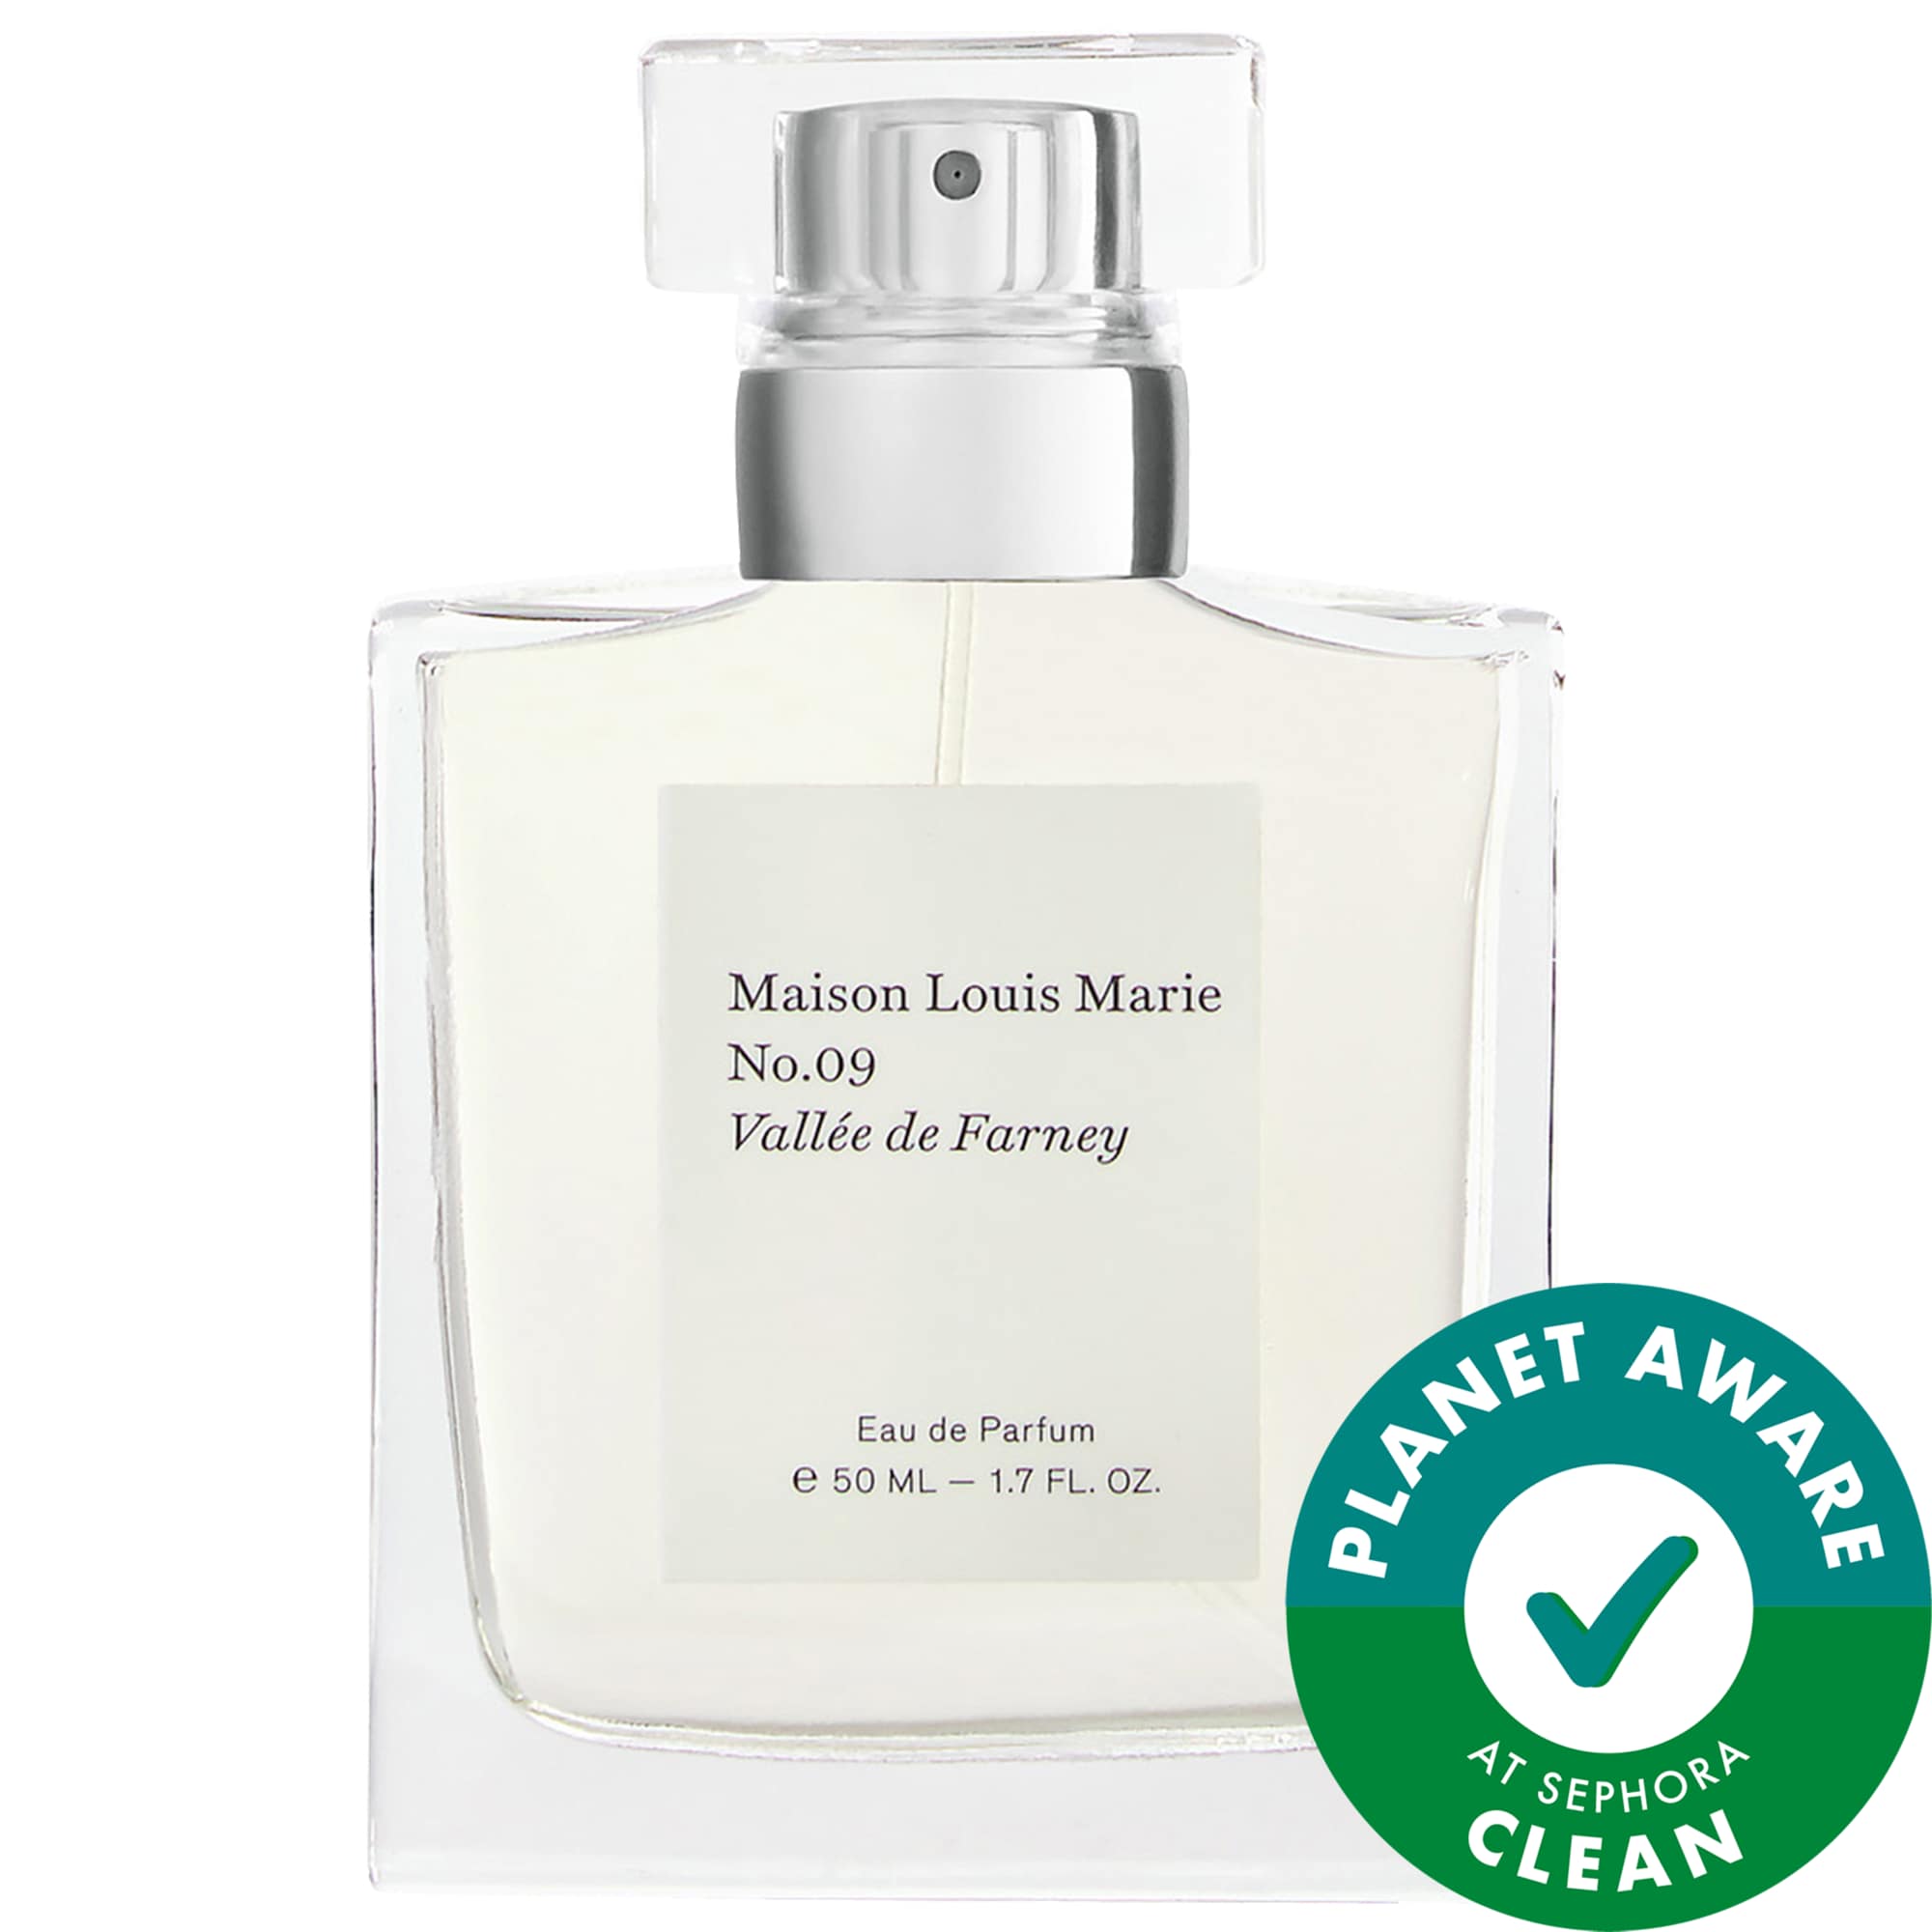 No.09 Vallée de Farney Eau de Parfum Maison Louis Marie